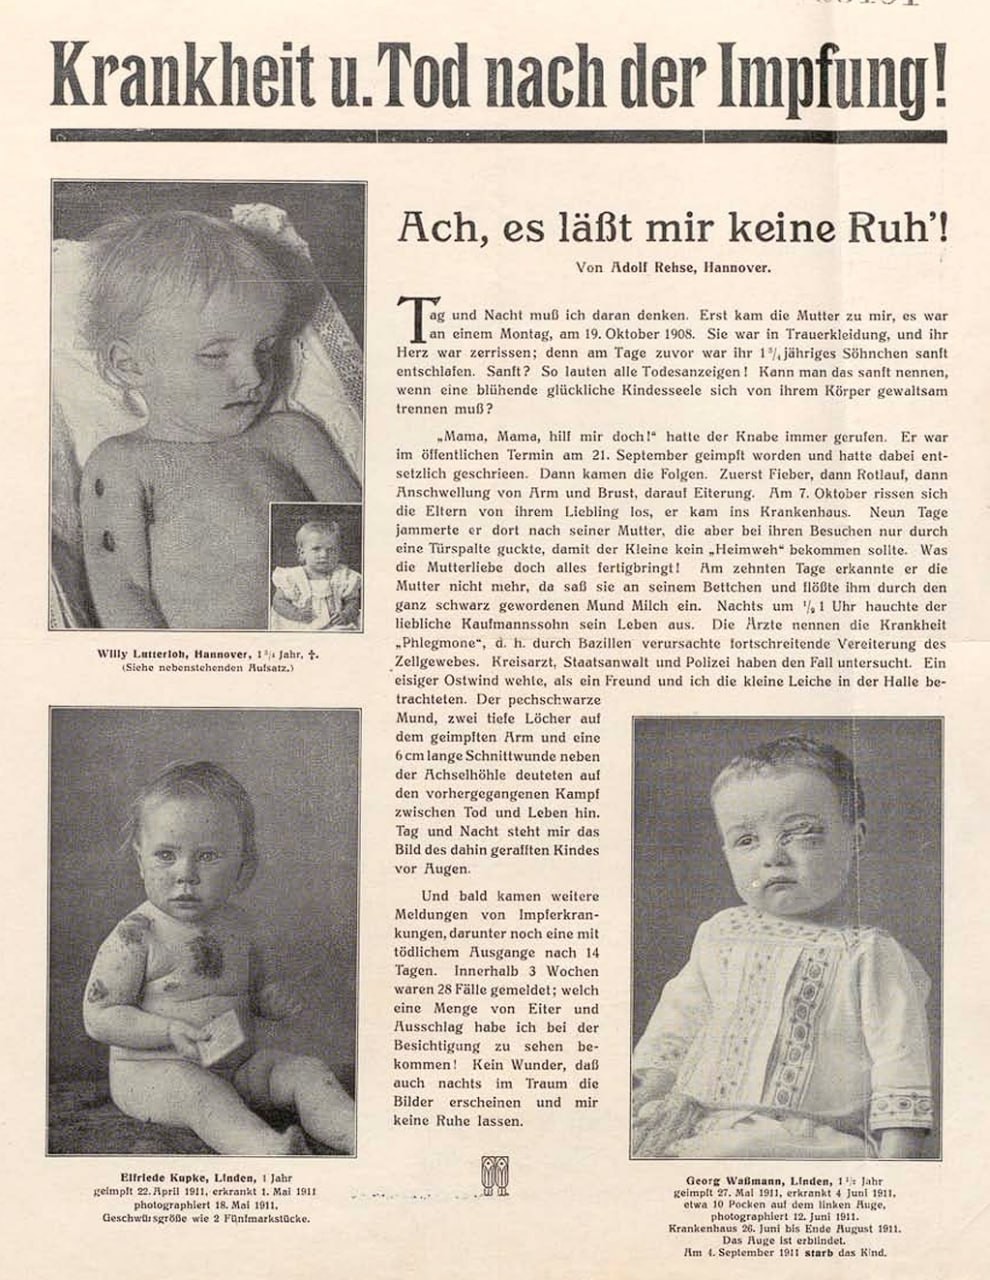 Flugblatt des Deutschen Reichsverbands zur Bekämpfung der Impfung, um 1911.